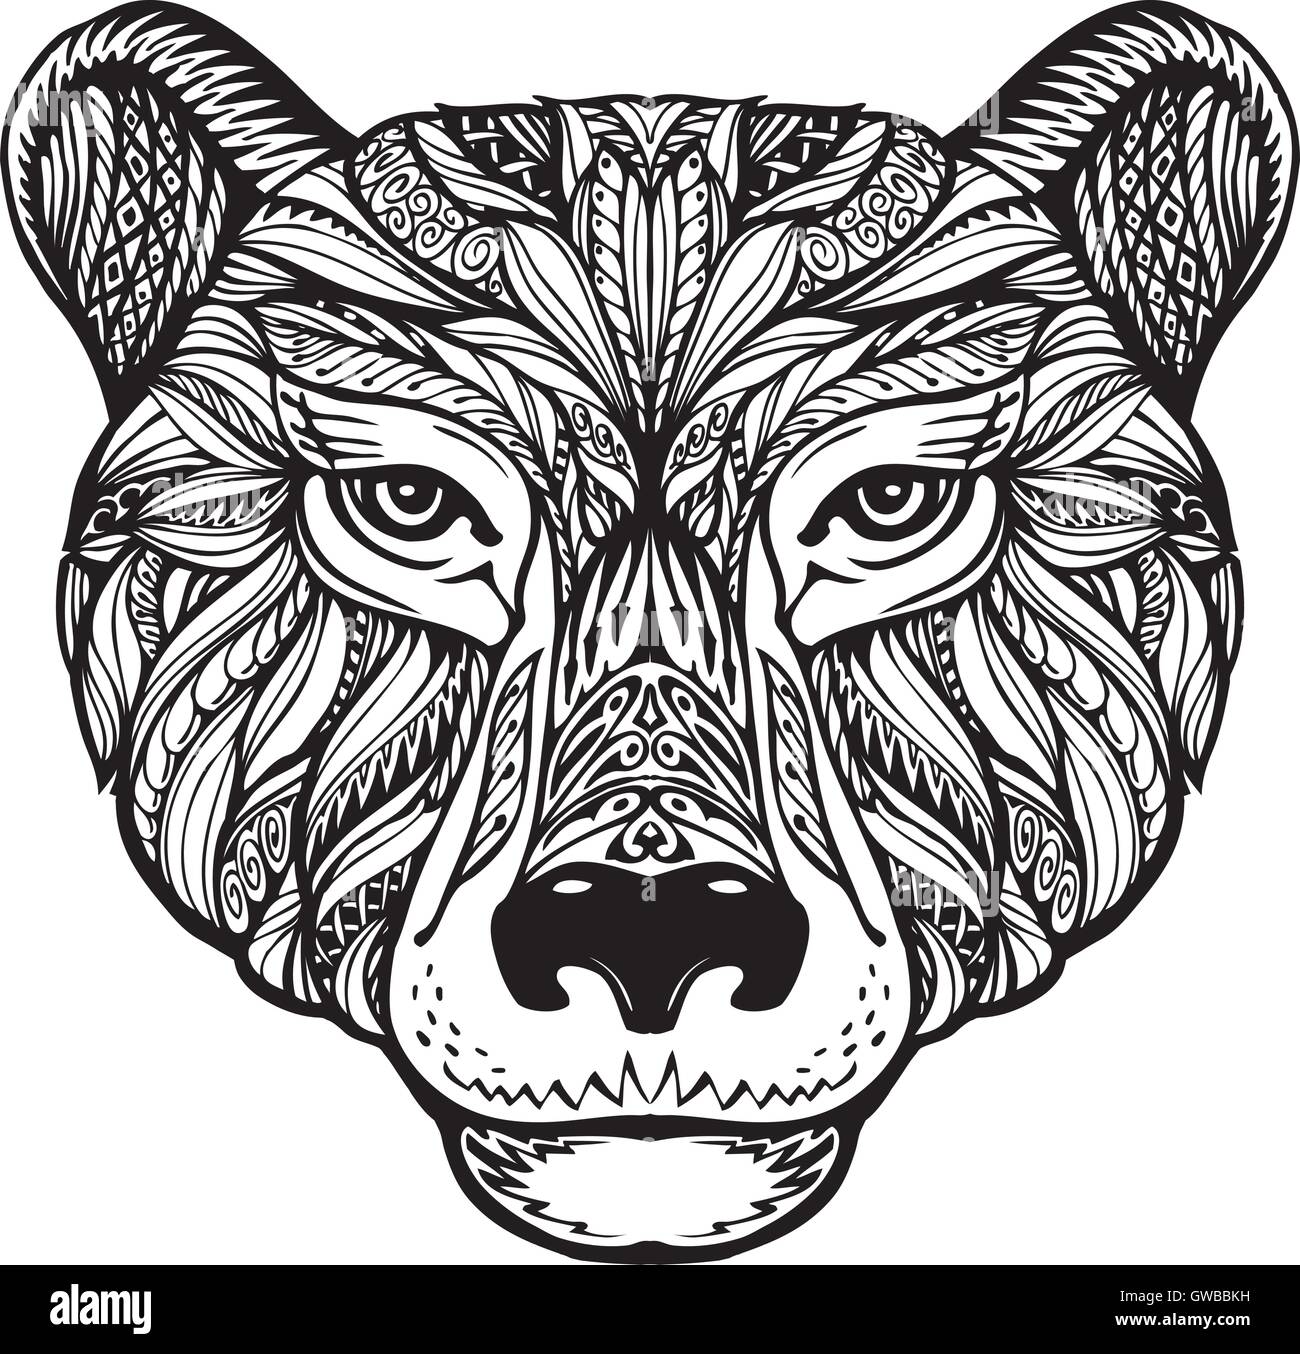 Bär. Ethno-Mustern. Handgezeichnete Vektor-Illustration mit keltischen Elementen. Kopf-grizzly, Tier-symbol Stock Vektor